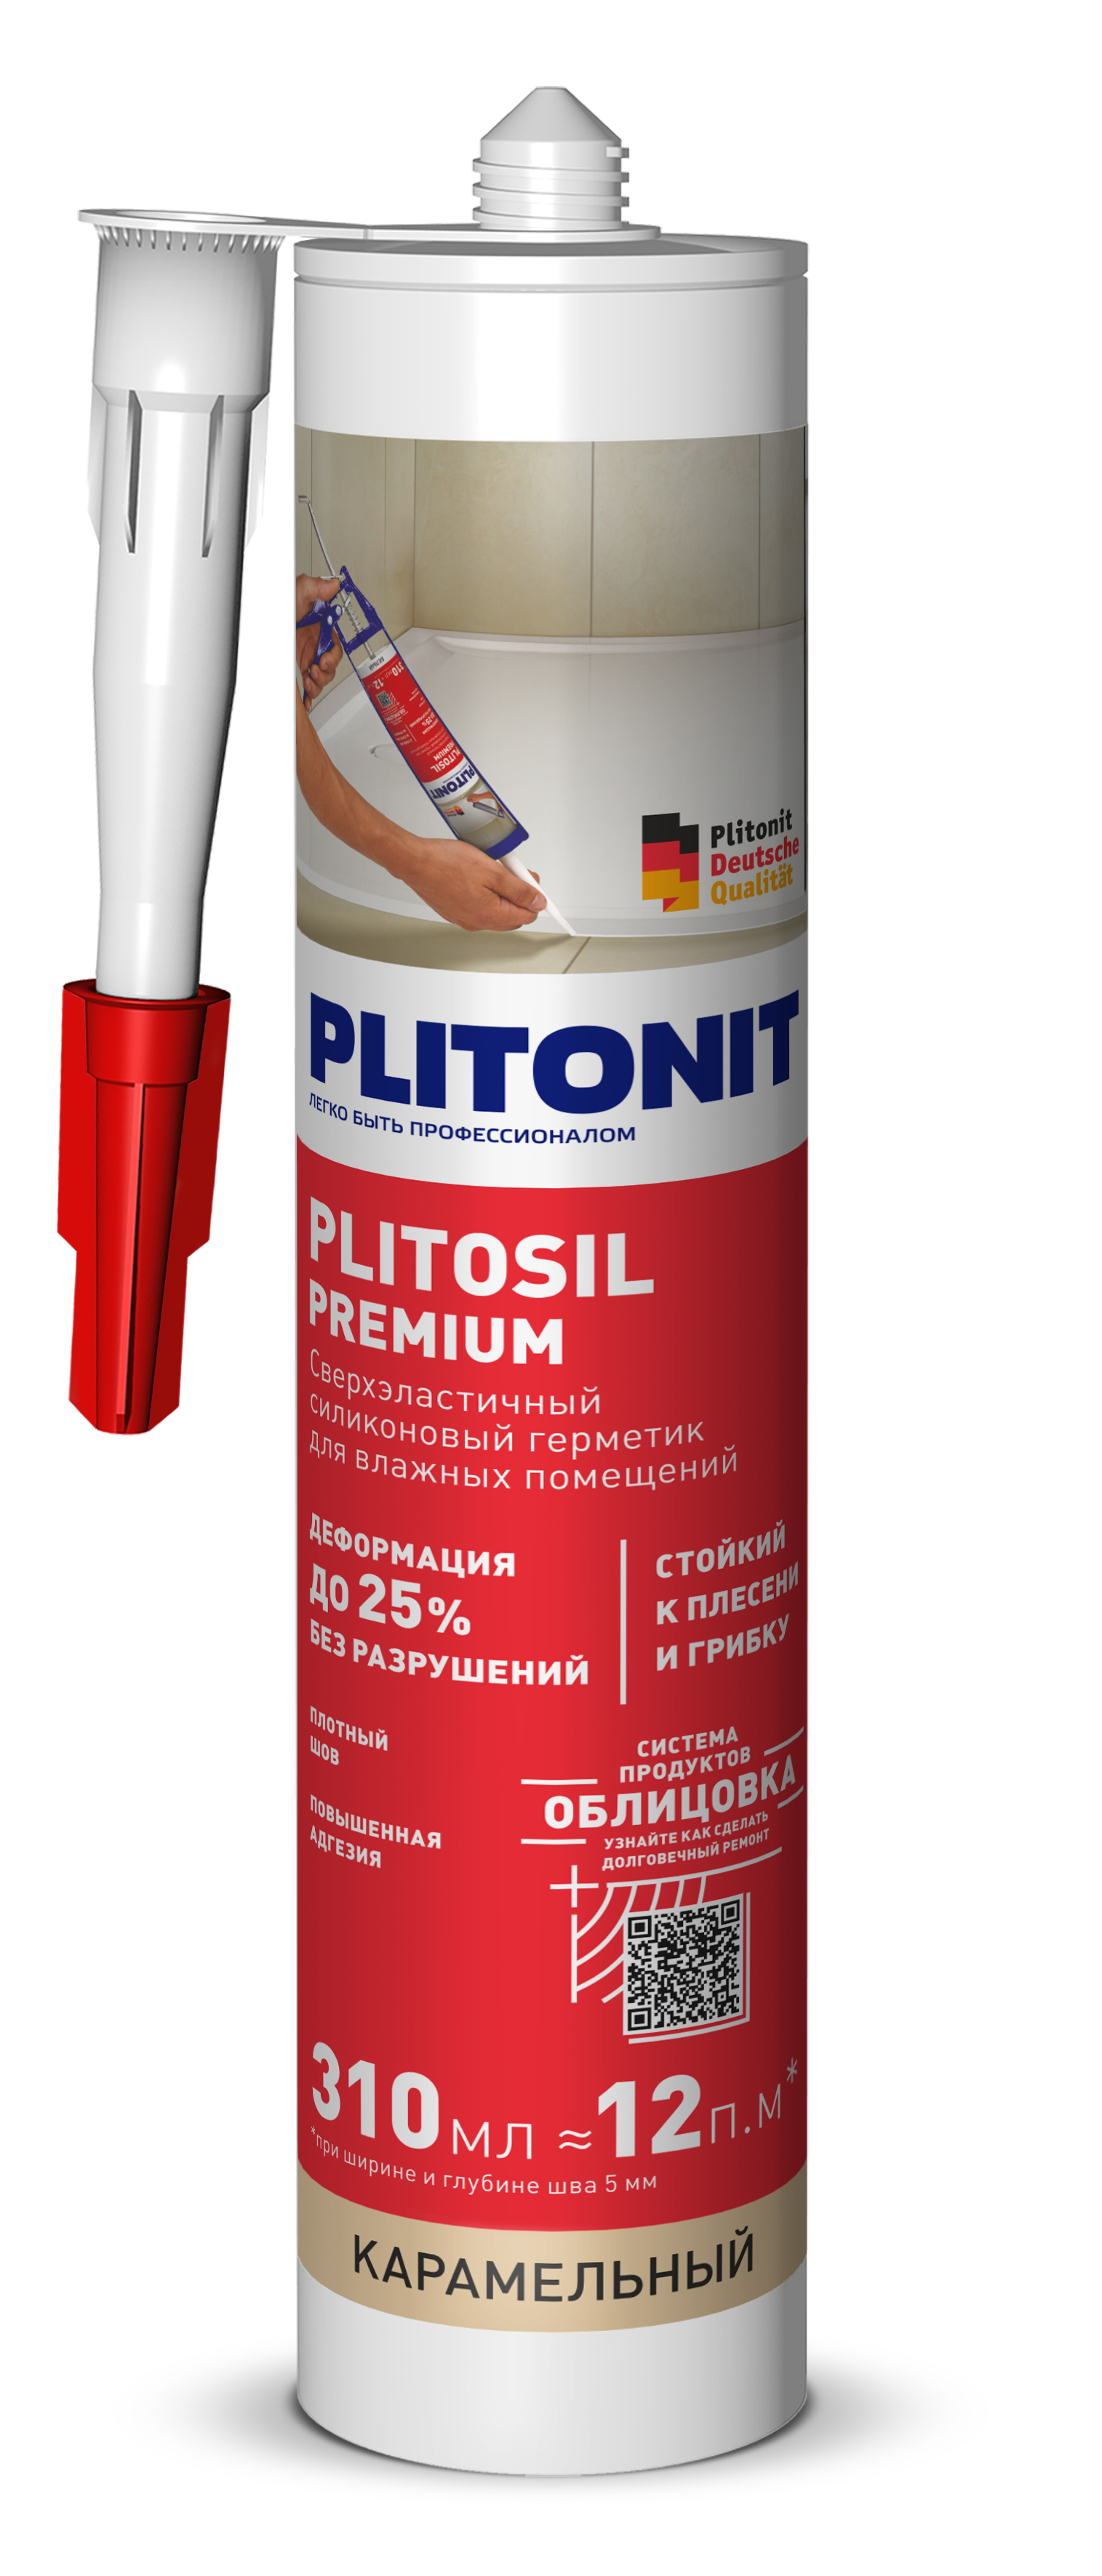 PLITONIT PlitoSil Premium Герметик сверхэластичный силиконовый для влажных помещений, карамельный 310 мл